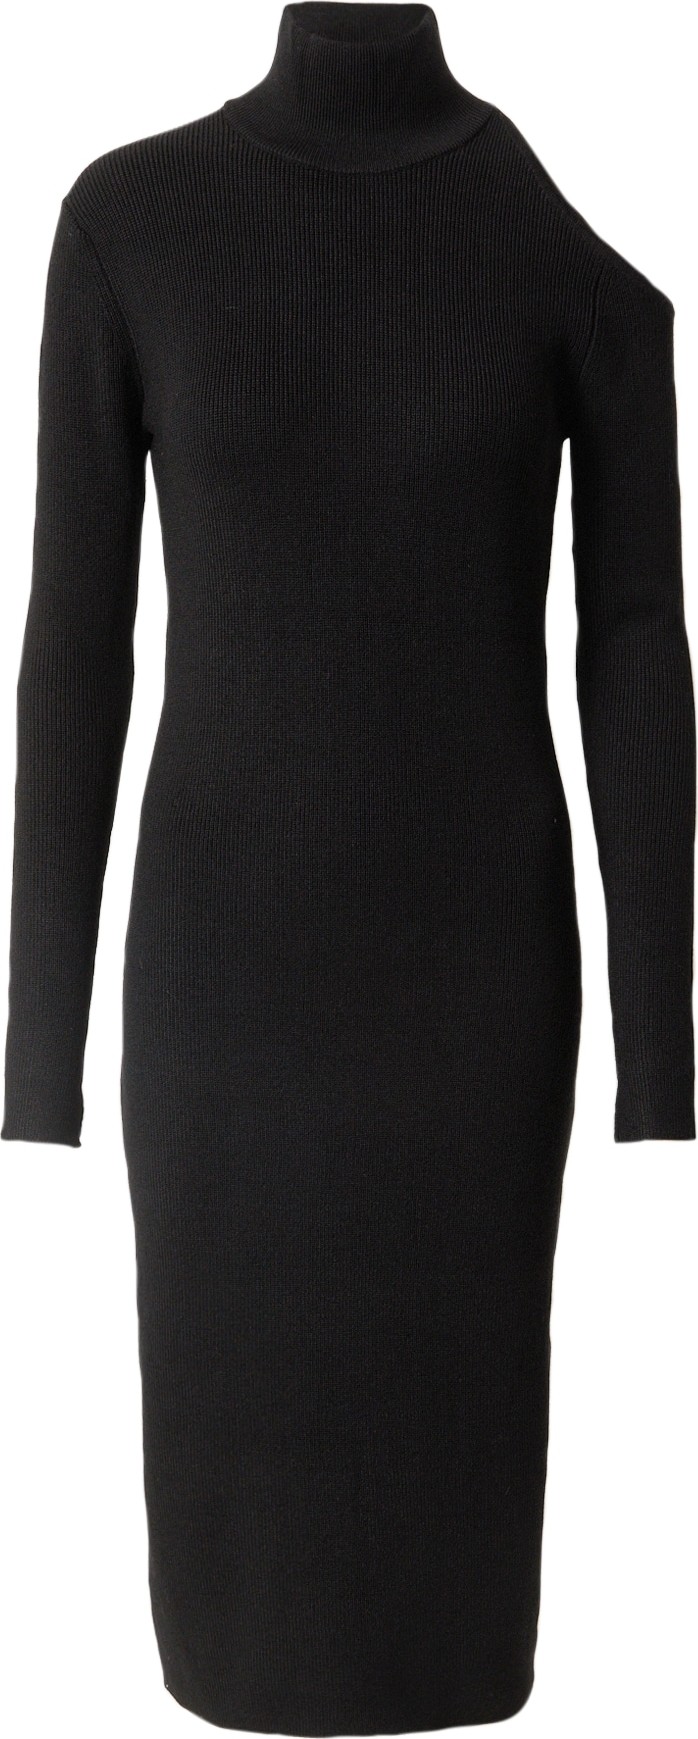 Úpletové šaty 'Lela Roxy' BZR černá